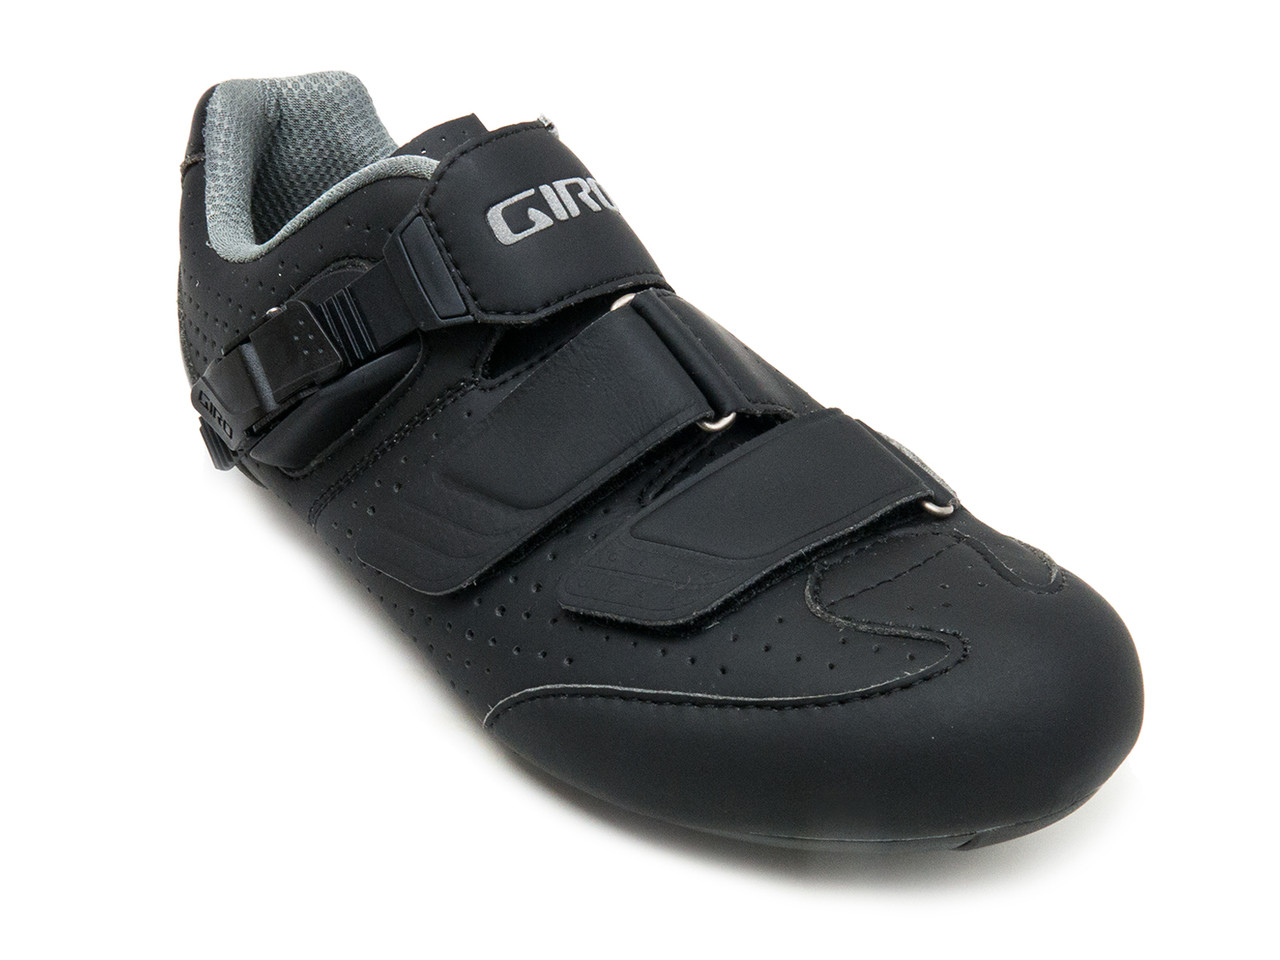 Giro Empire E70 Knit Road Shoe Men's 